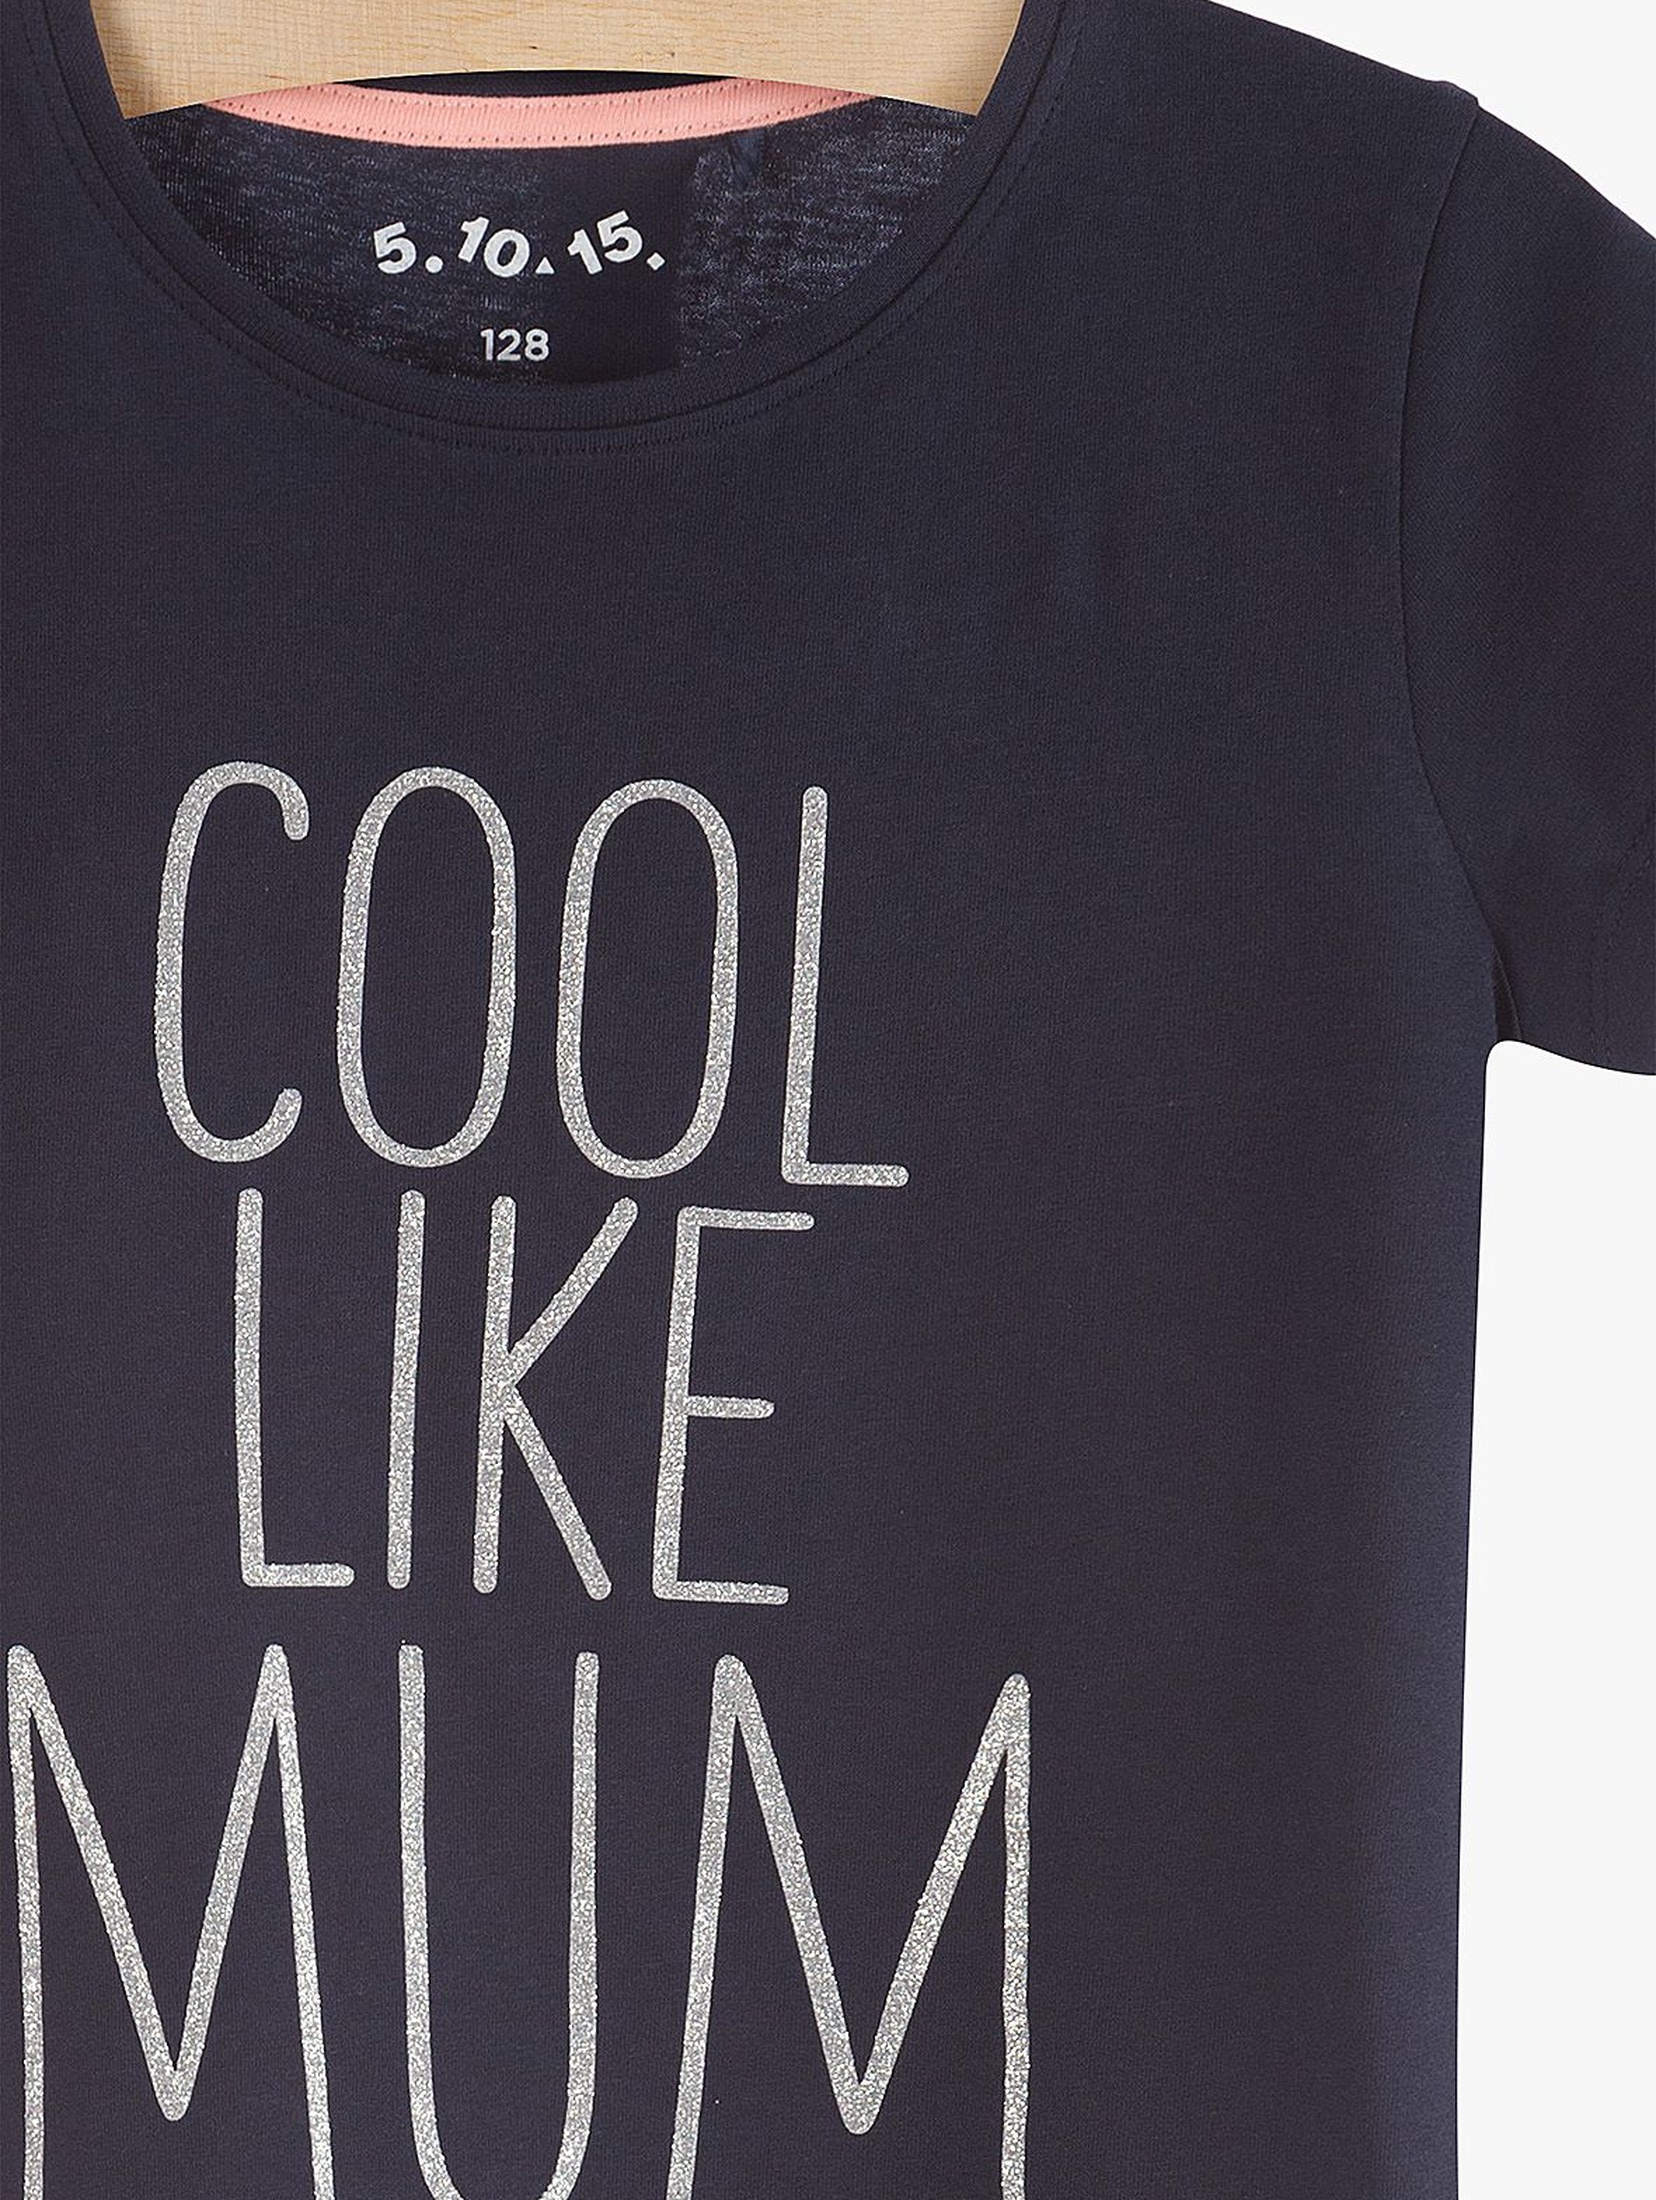 T-Shirt dziewczęcy bawełniany z napisem "Cool like mum"